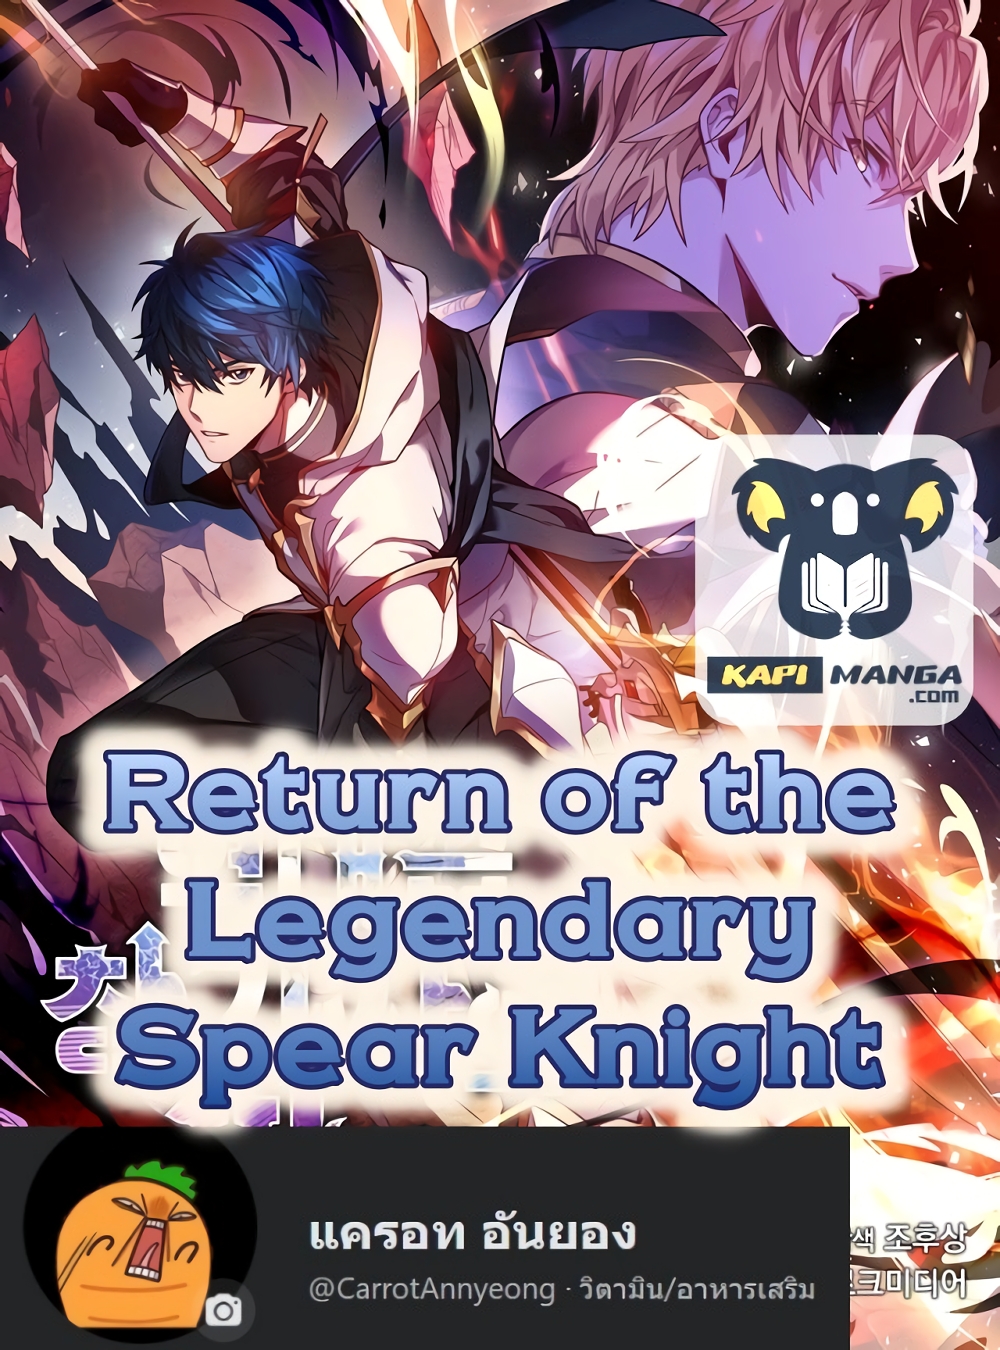 Return of the Legendary Spear Knight1 (1)